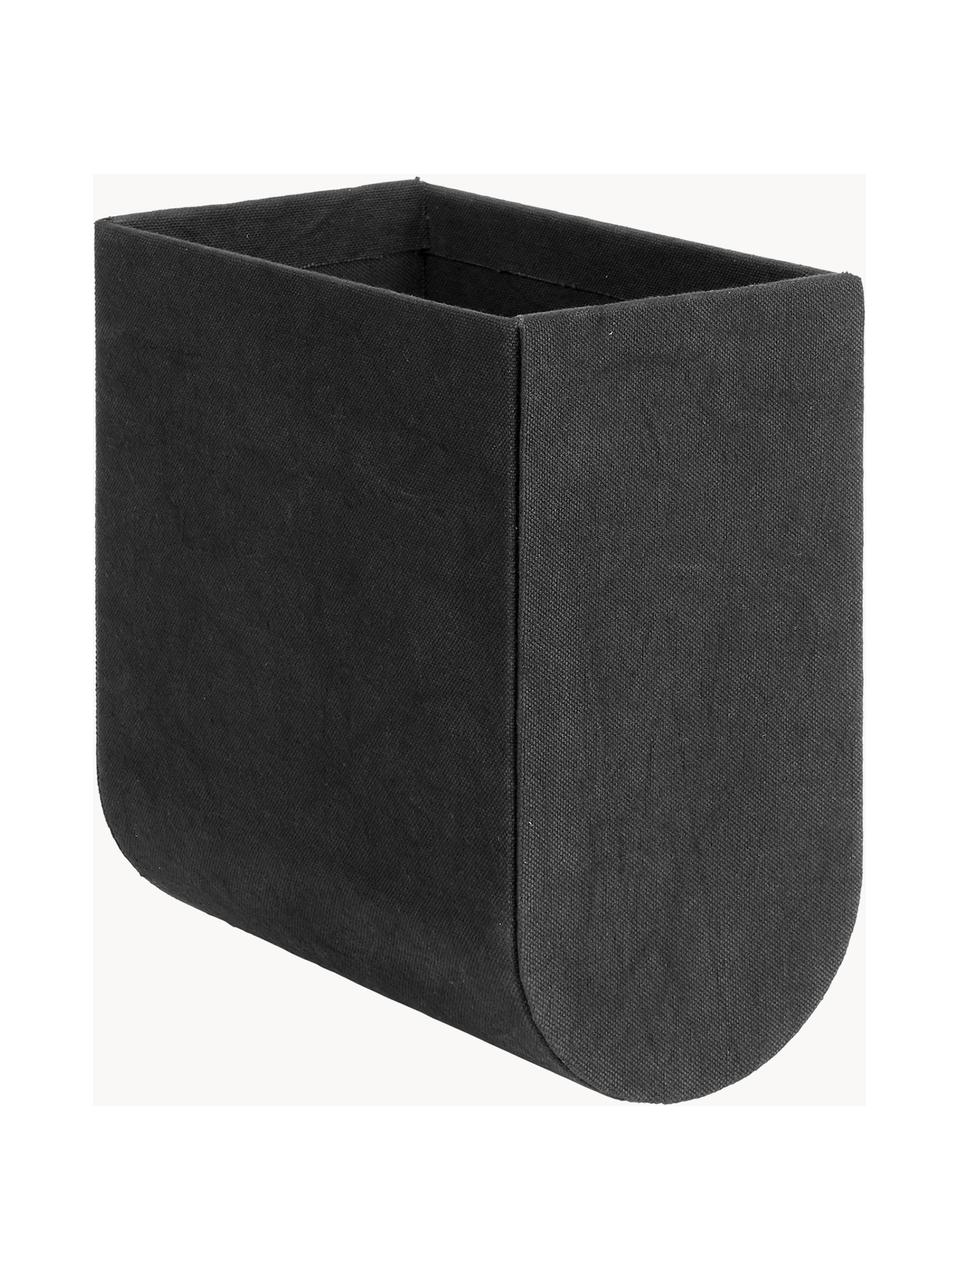 Handgefertigte Aufbewahrungsbox Curved, Bezug: 100 % Baumwolle, Korpus: Pappe, Schwarz, B 12 x H 22 cm